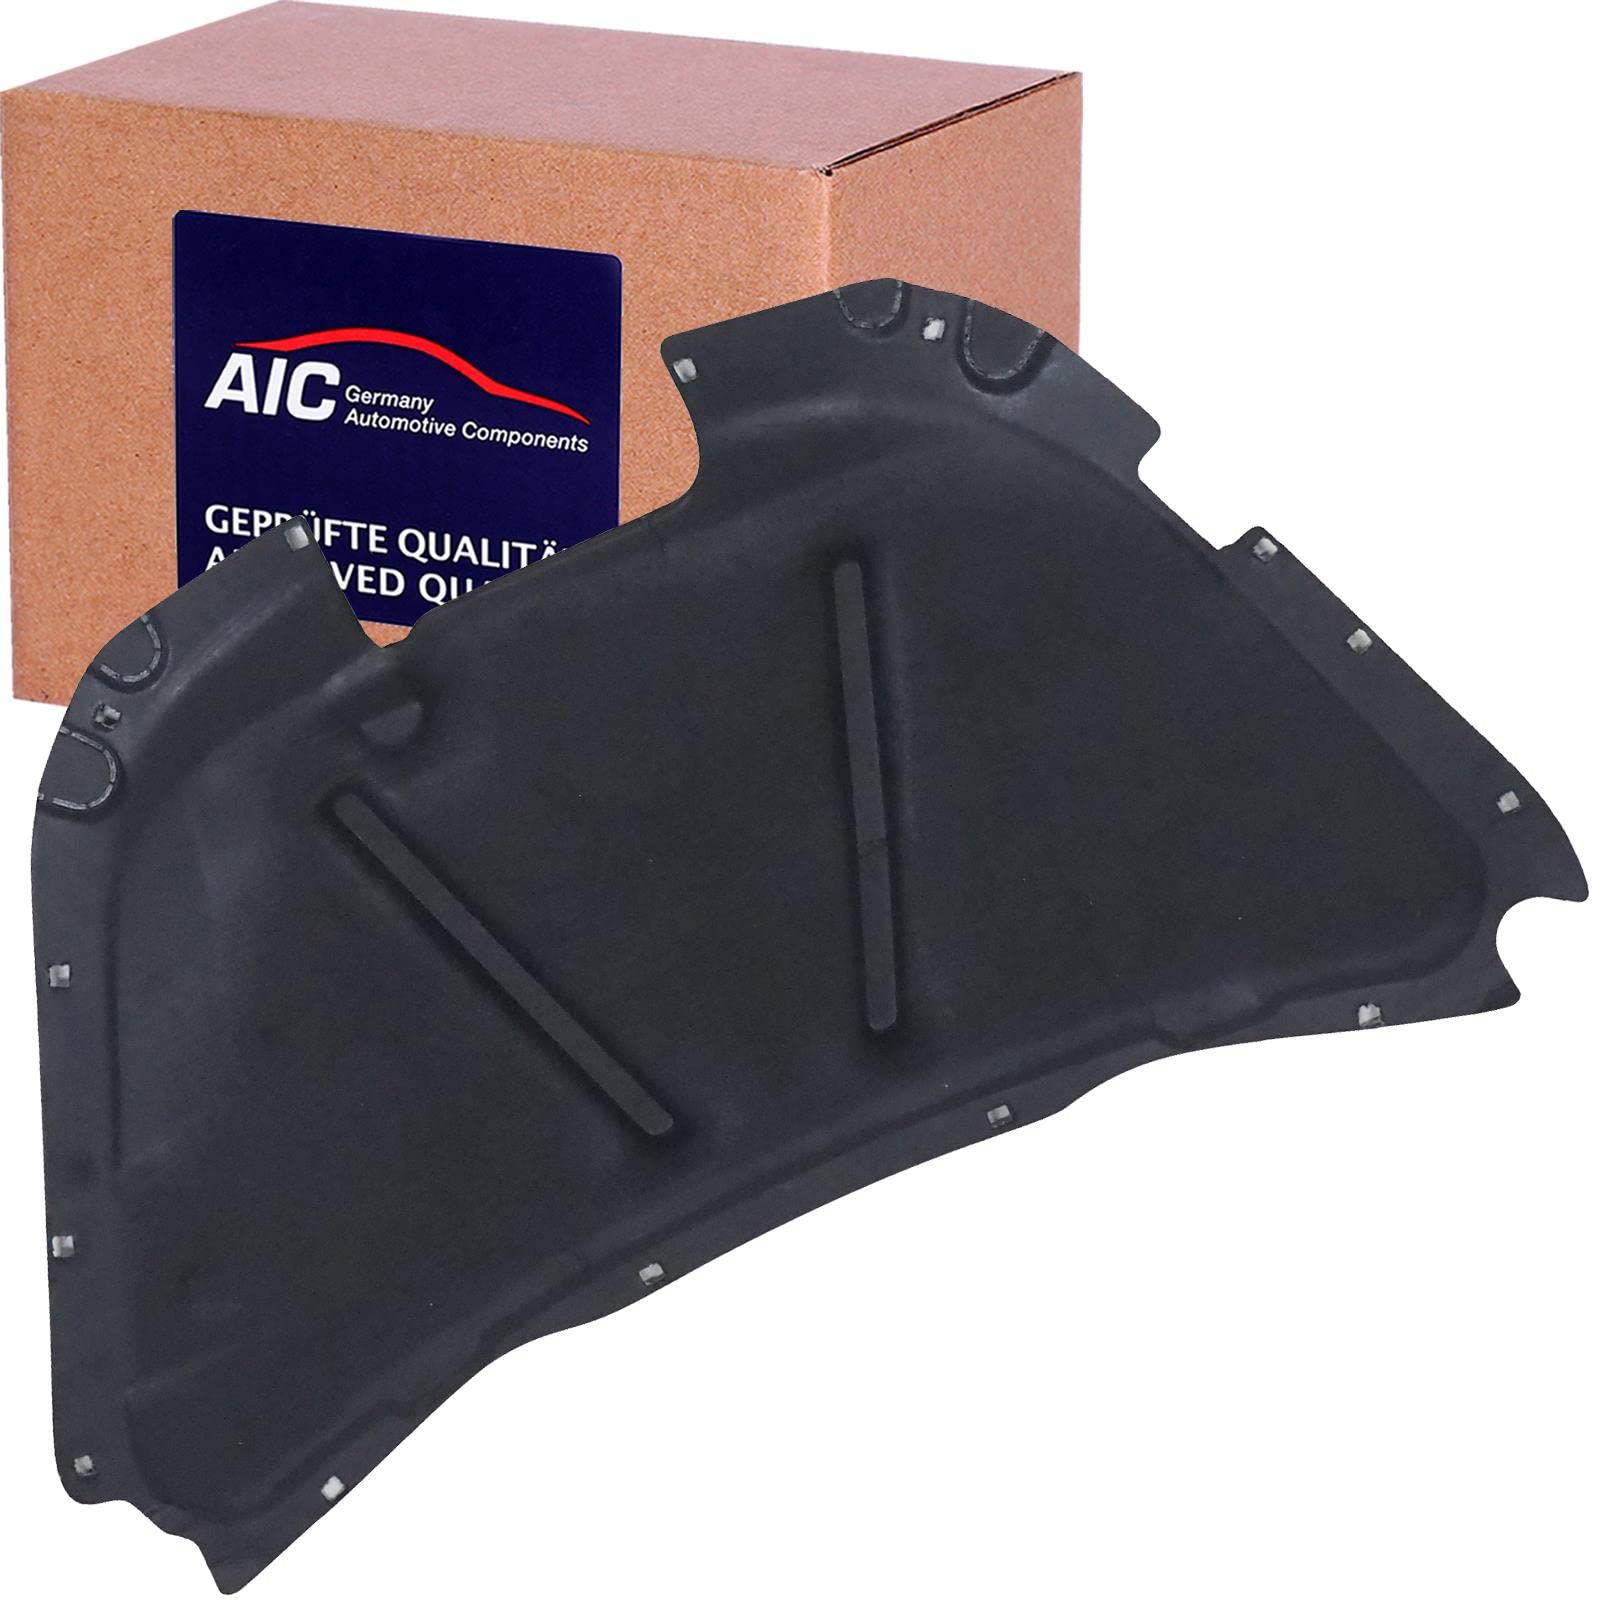 Motorraumdämmung Original AIC Quality Motorhaube von AIC (57118) Schalldämmung Karosserie Dämpfung, Motorraum, Dämpfung, Dämmung, Geräuschdämmung von AIC